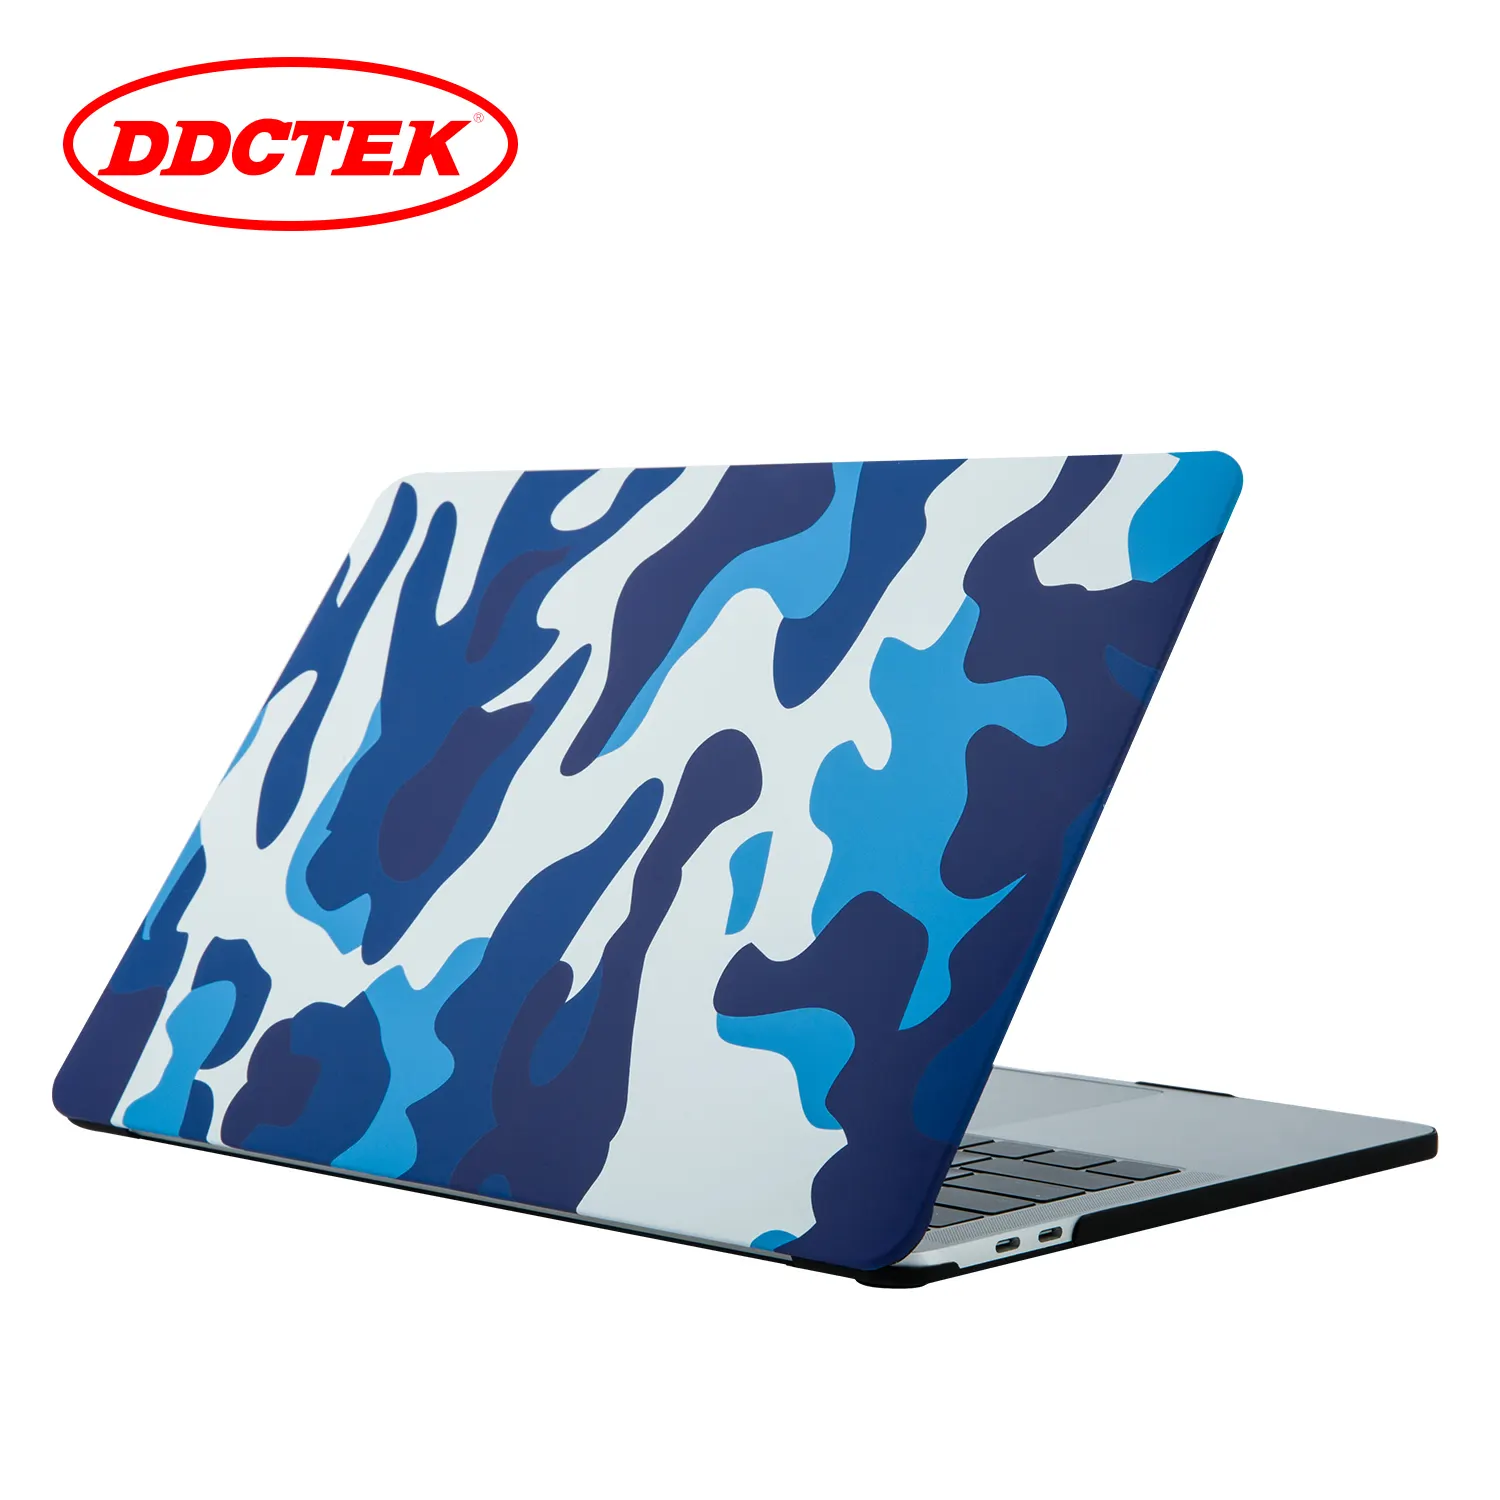 Casing Laptop Tahan Guncangan, Pelindung HP Plastik Keras Ultra Tipis Ringan Buram untuk MacBook A1278